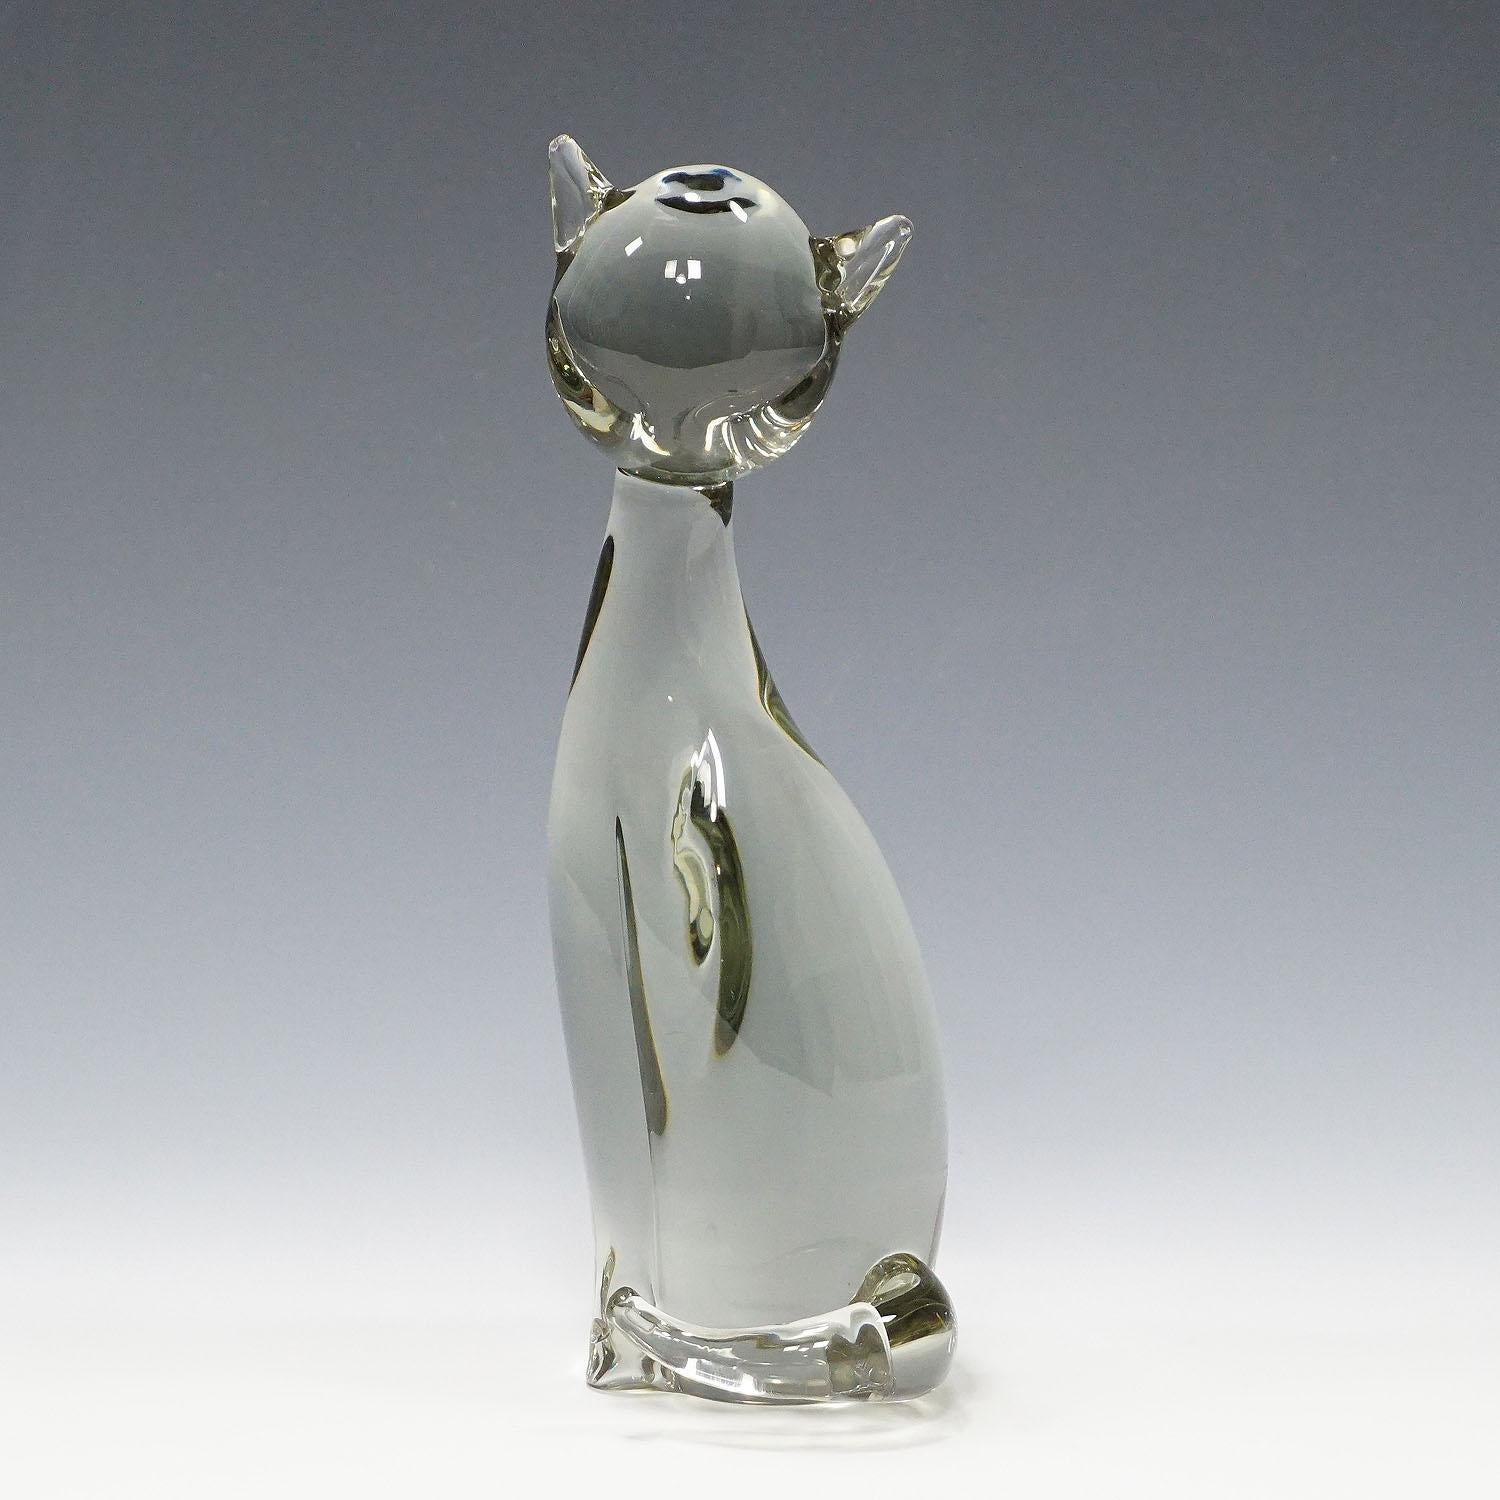 Sculpture d'un chat stylisé Design/One ca. 1970

Une jolie sculpture d'un chat stylisé en verre gris fumée. Fabriqué à la main dans la manufacture de verre Gral, en Allemagne. Il a été conçu par Livio Seguso vers 1970. Avec étiquette d'usine et